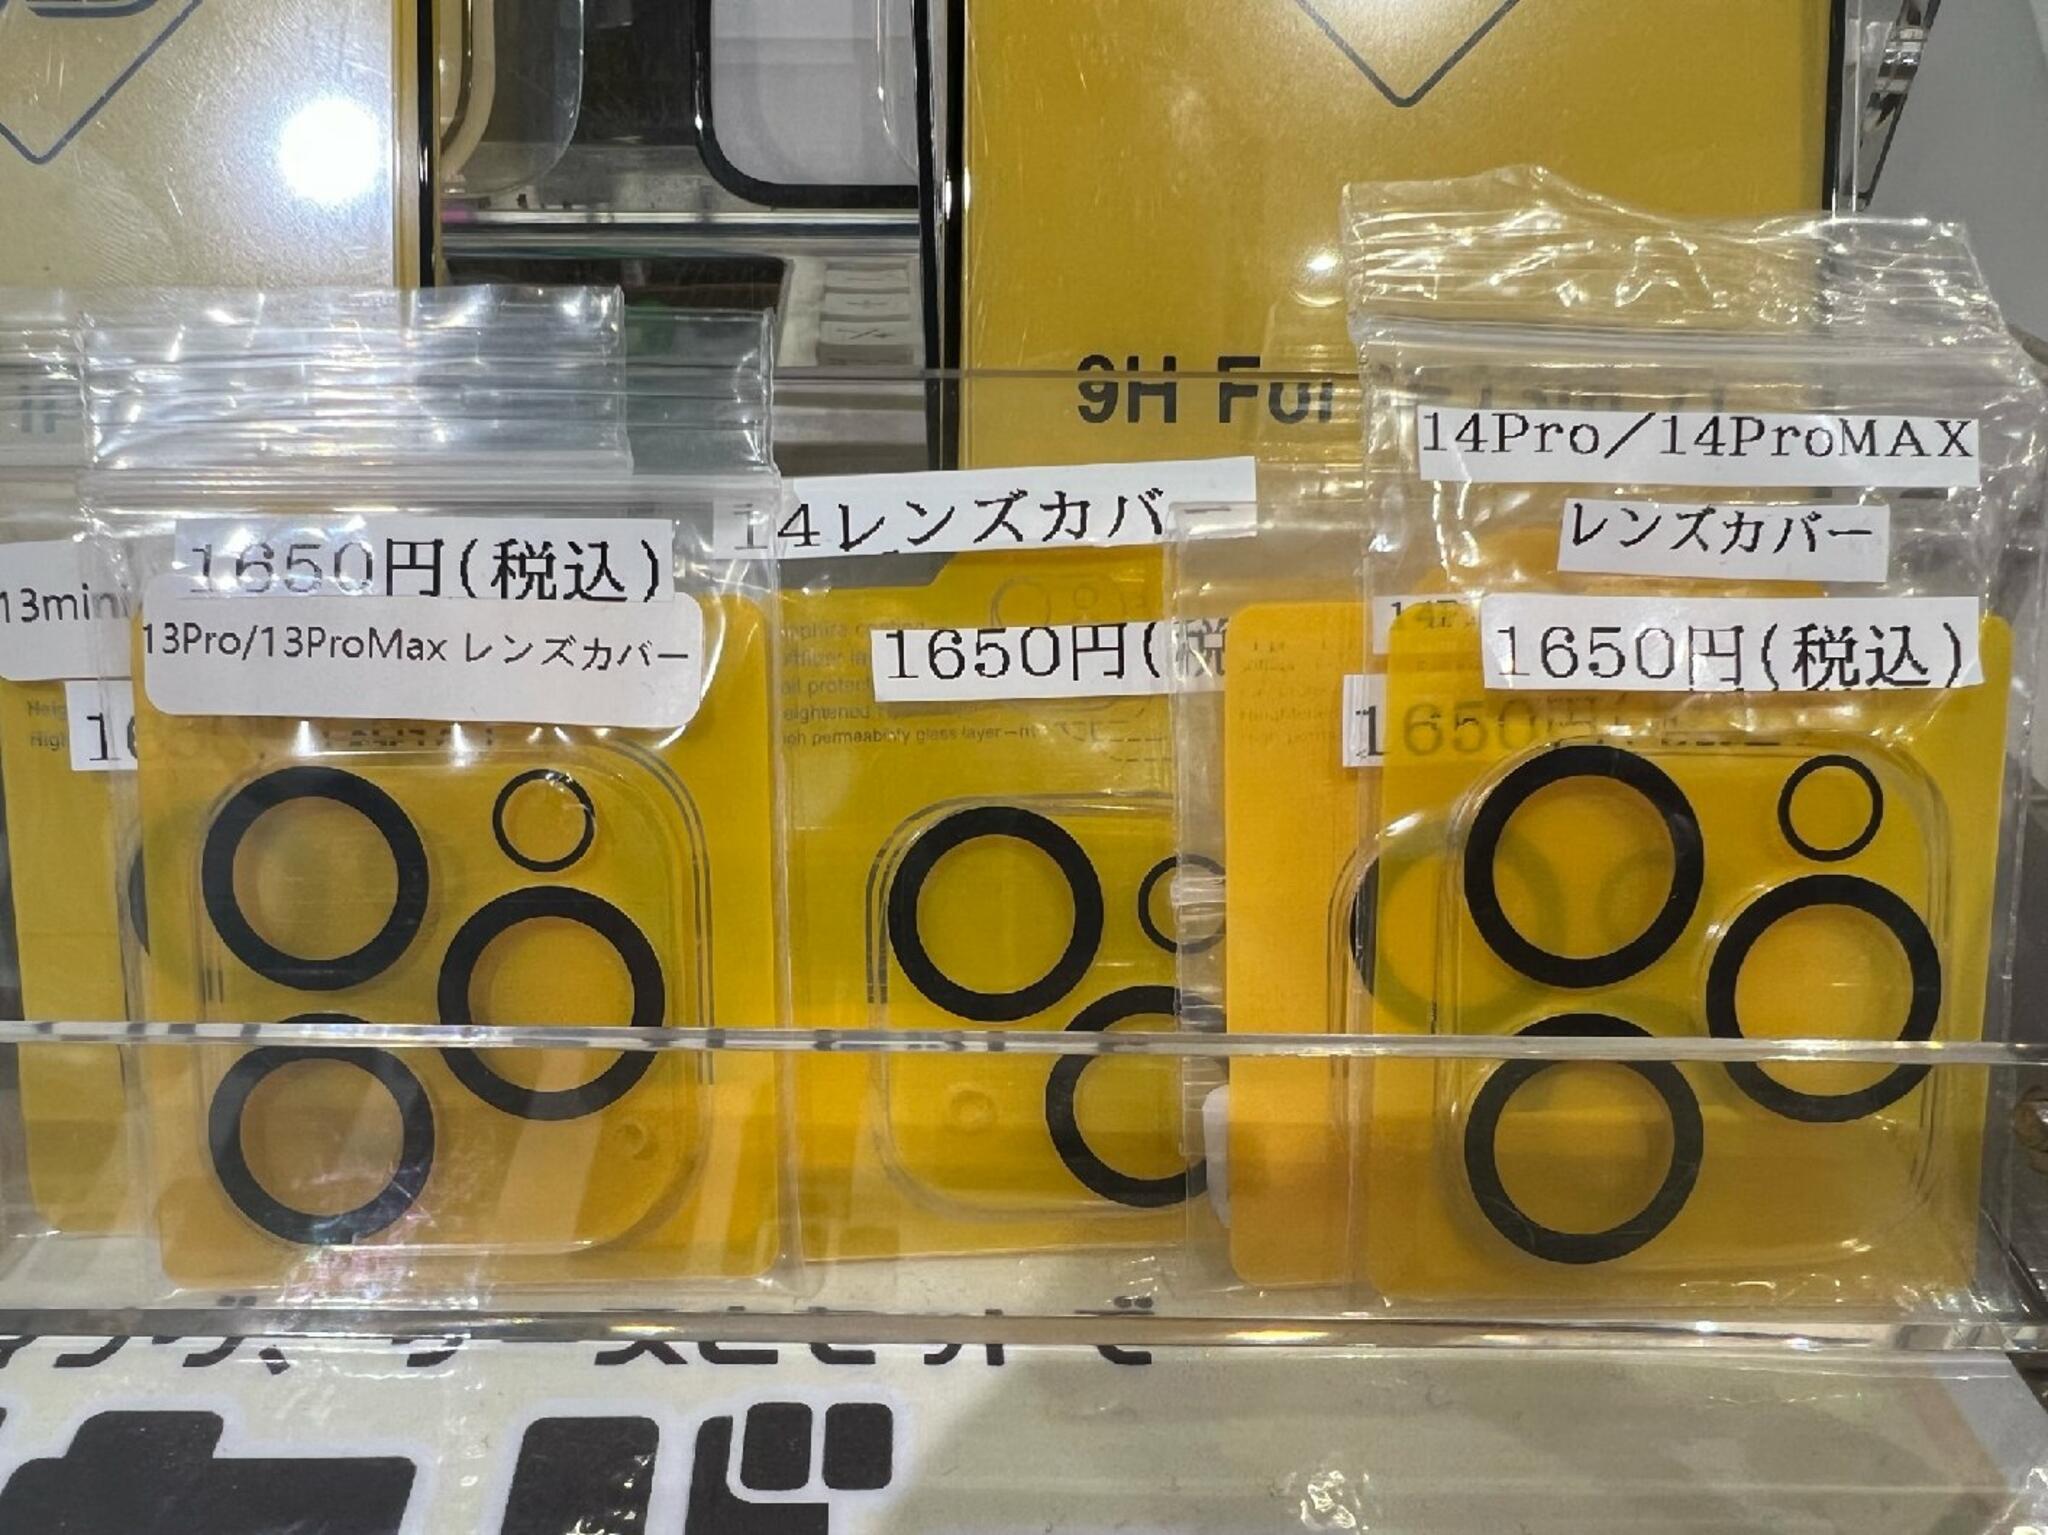 iPhone・iPad・Switch修理店 スマートクール イオンモール広島祇園店からのお知らせ(レンズ カバーとガラスコーティングで完全防御！？)に関する写真